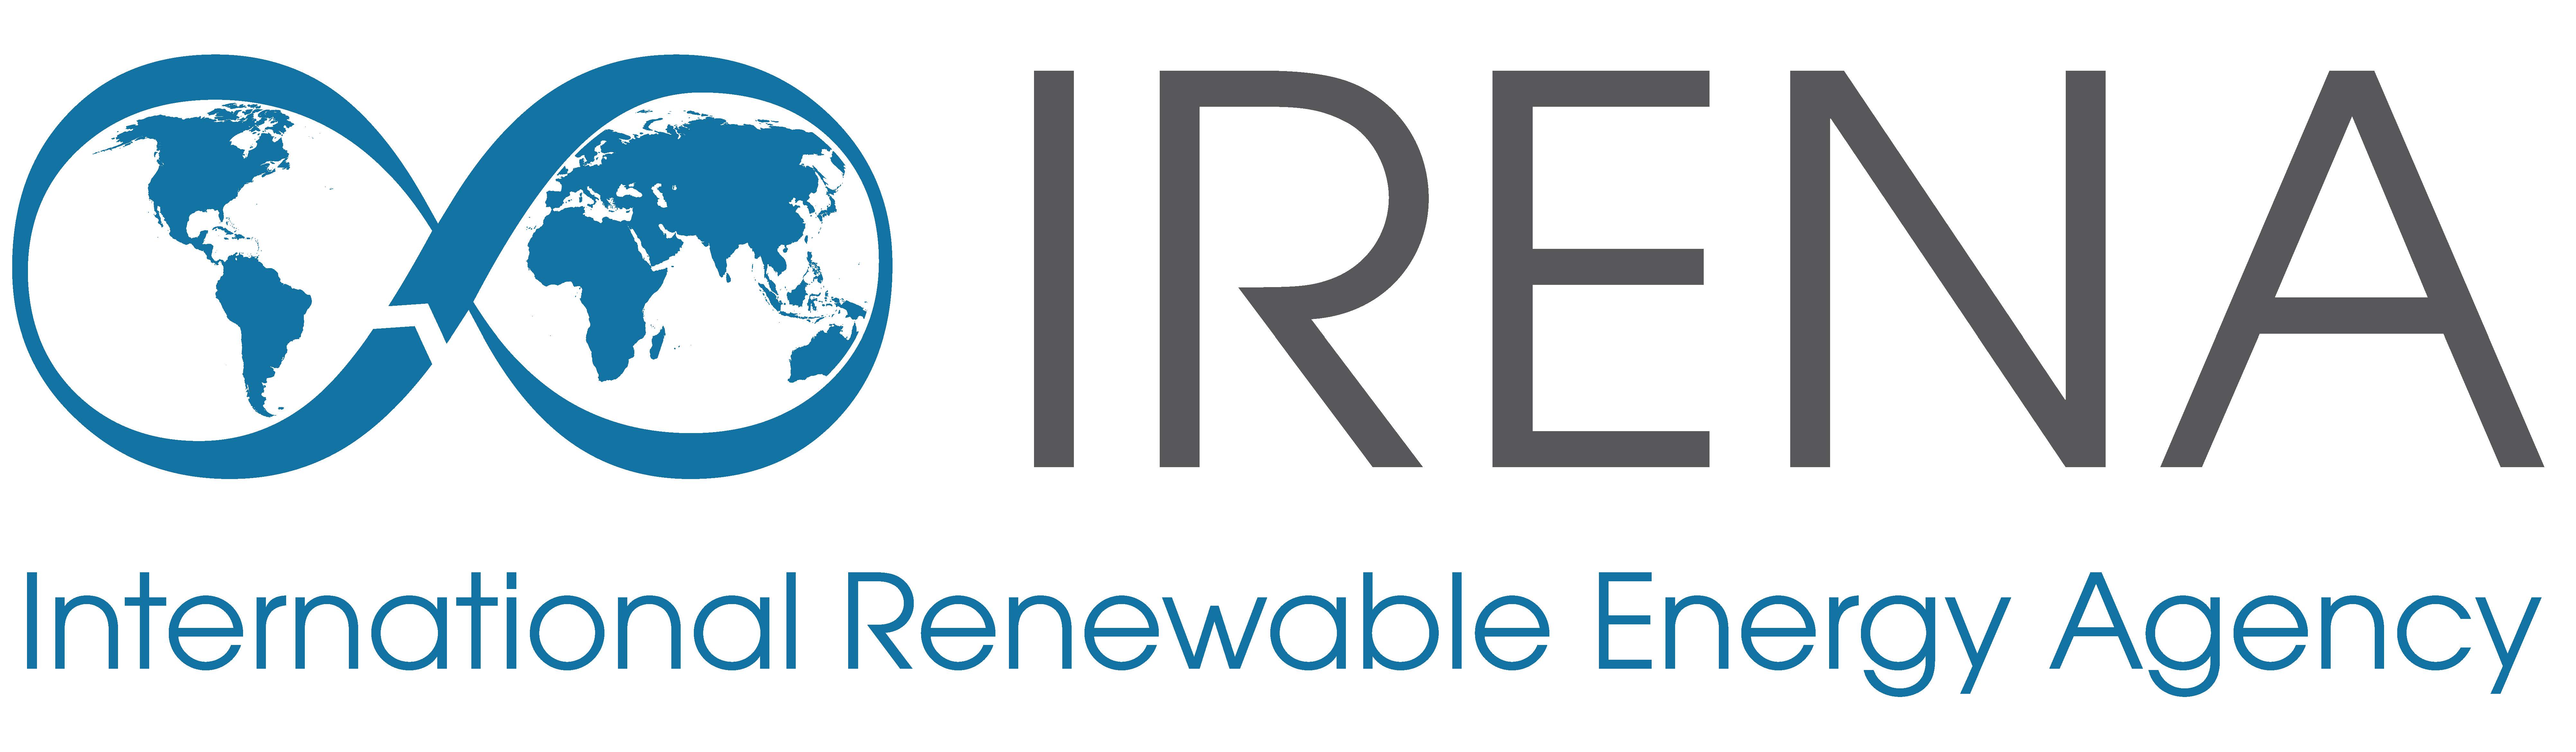 الوكالة الدولية للطاقة المتجددة (آيرينا)